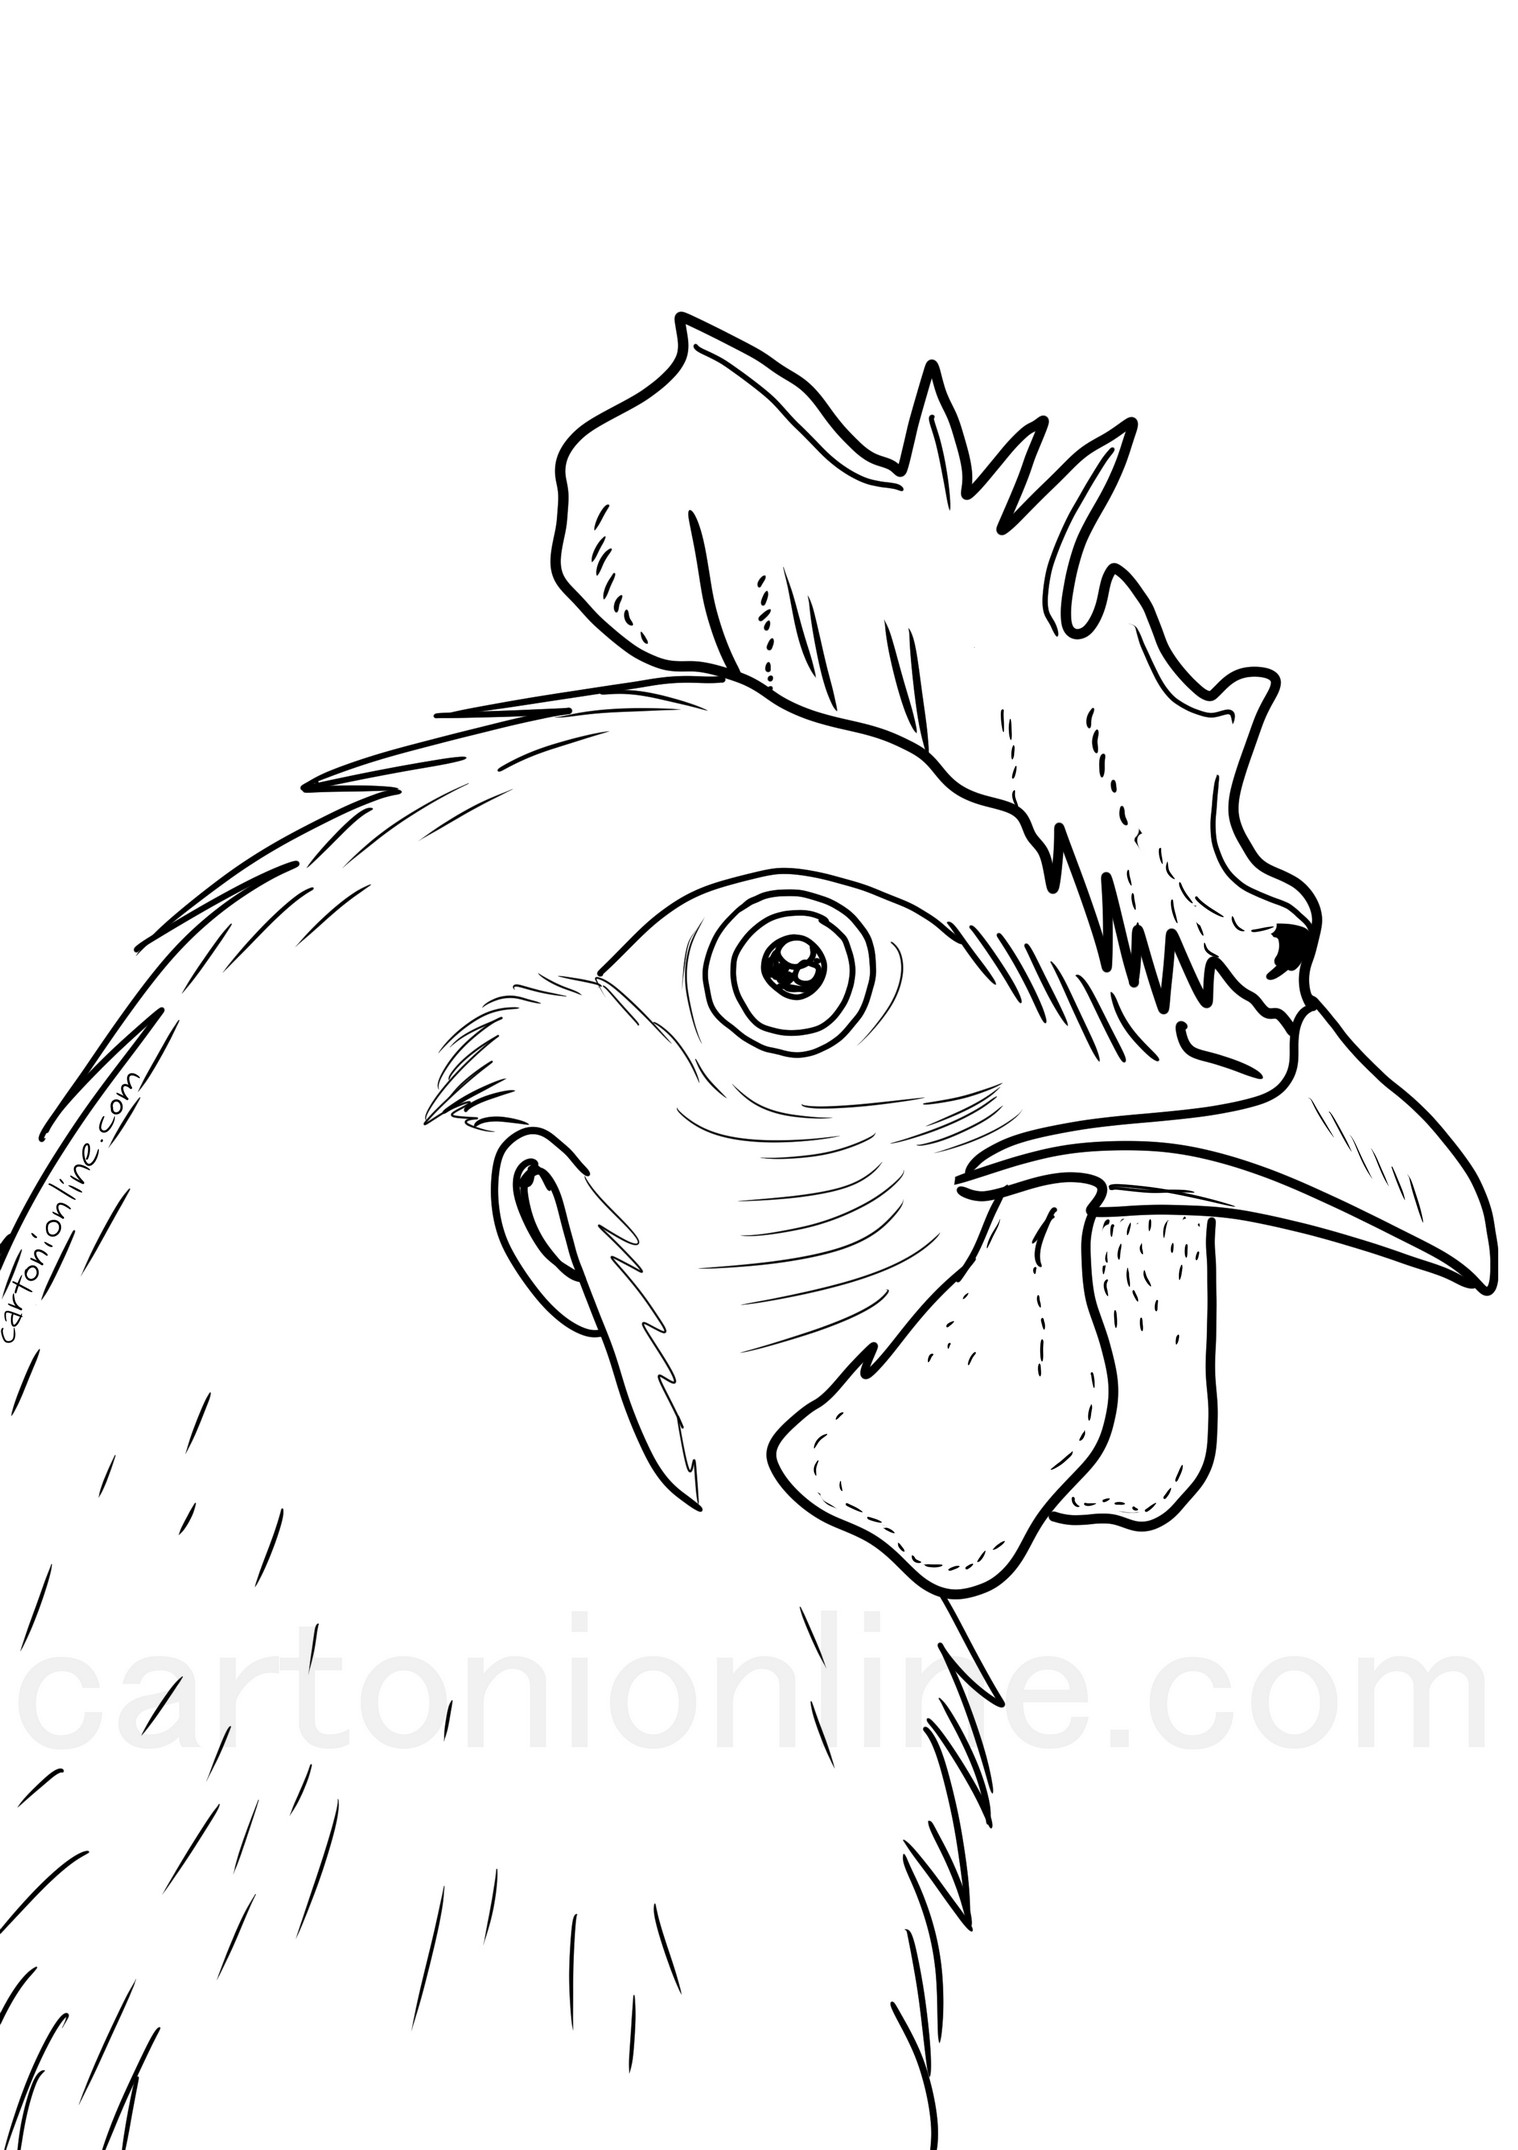 鶏の頭のぬり絵を描く